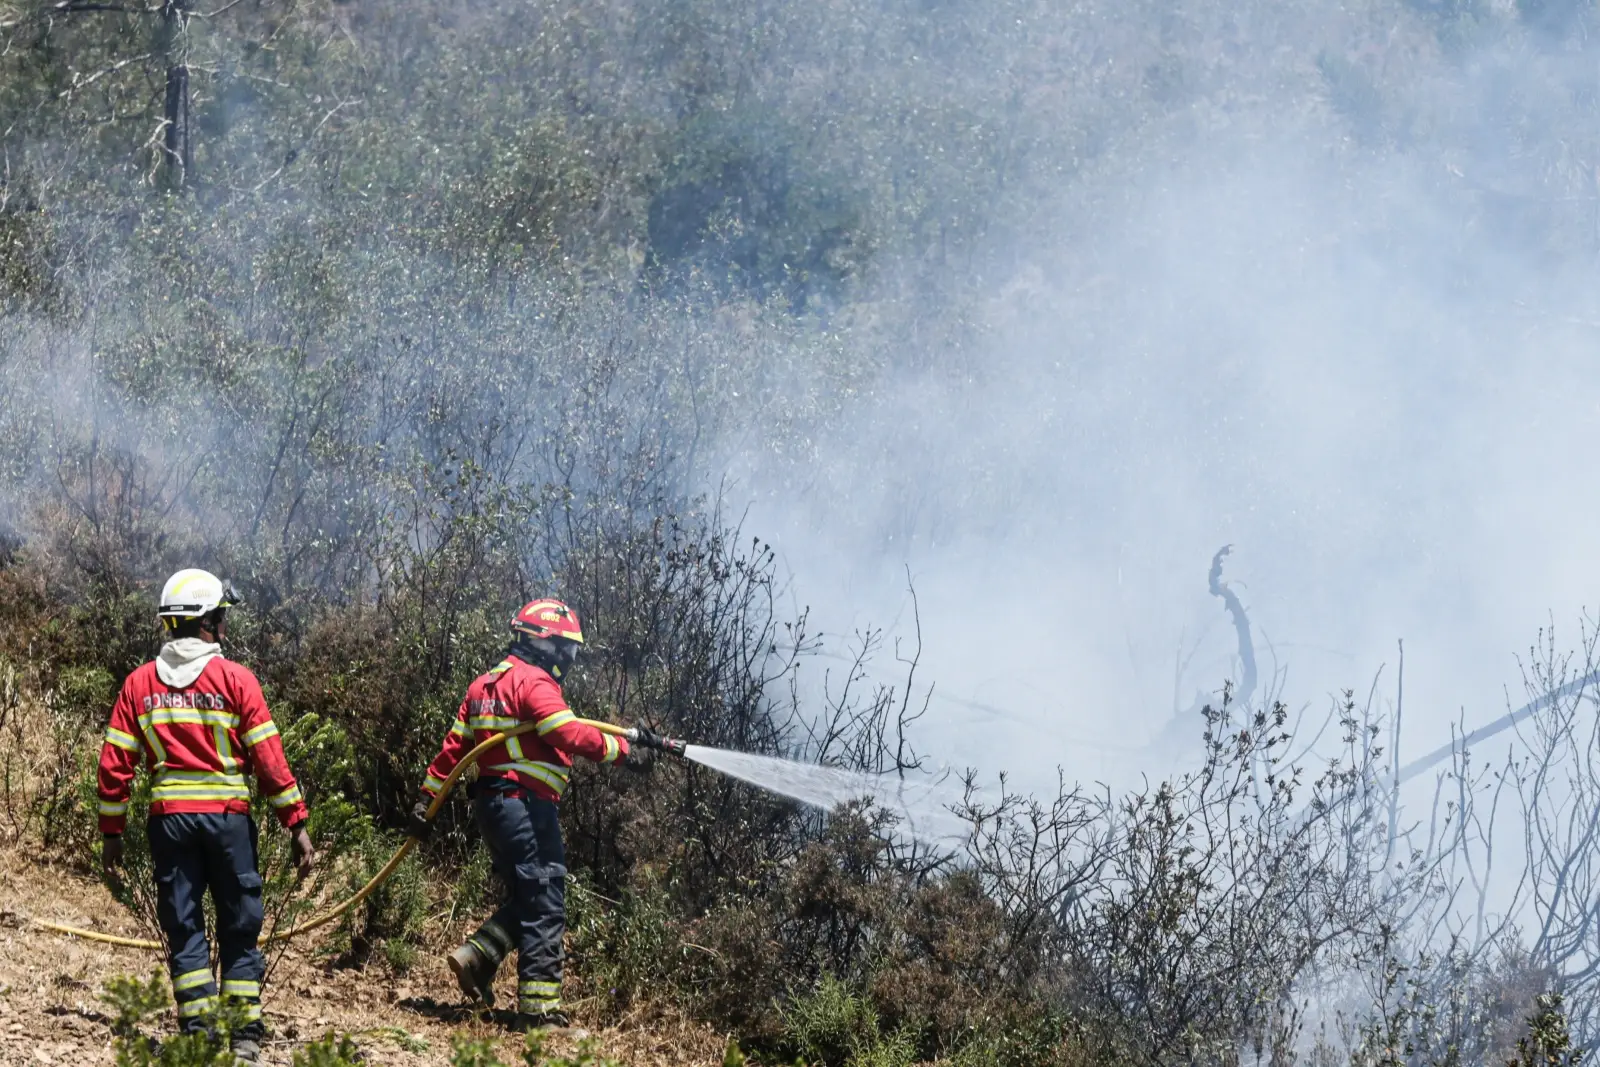 Sao Bras De Alportel E Tavira Em Alerta Maximo De Incendio Postal Do Algarve